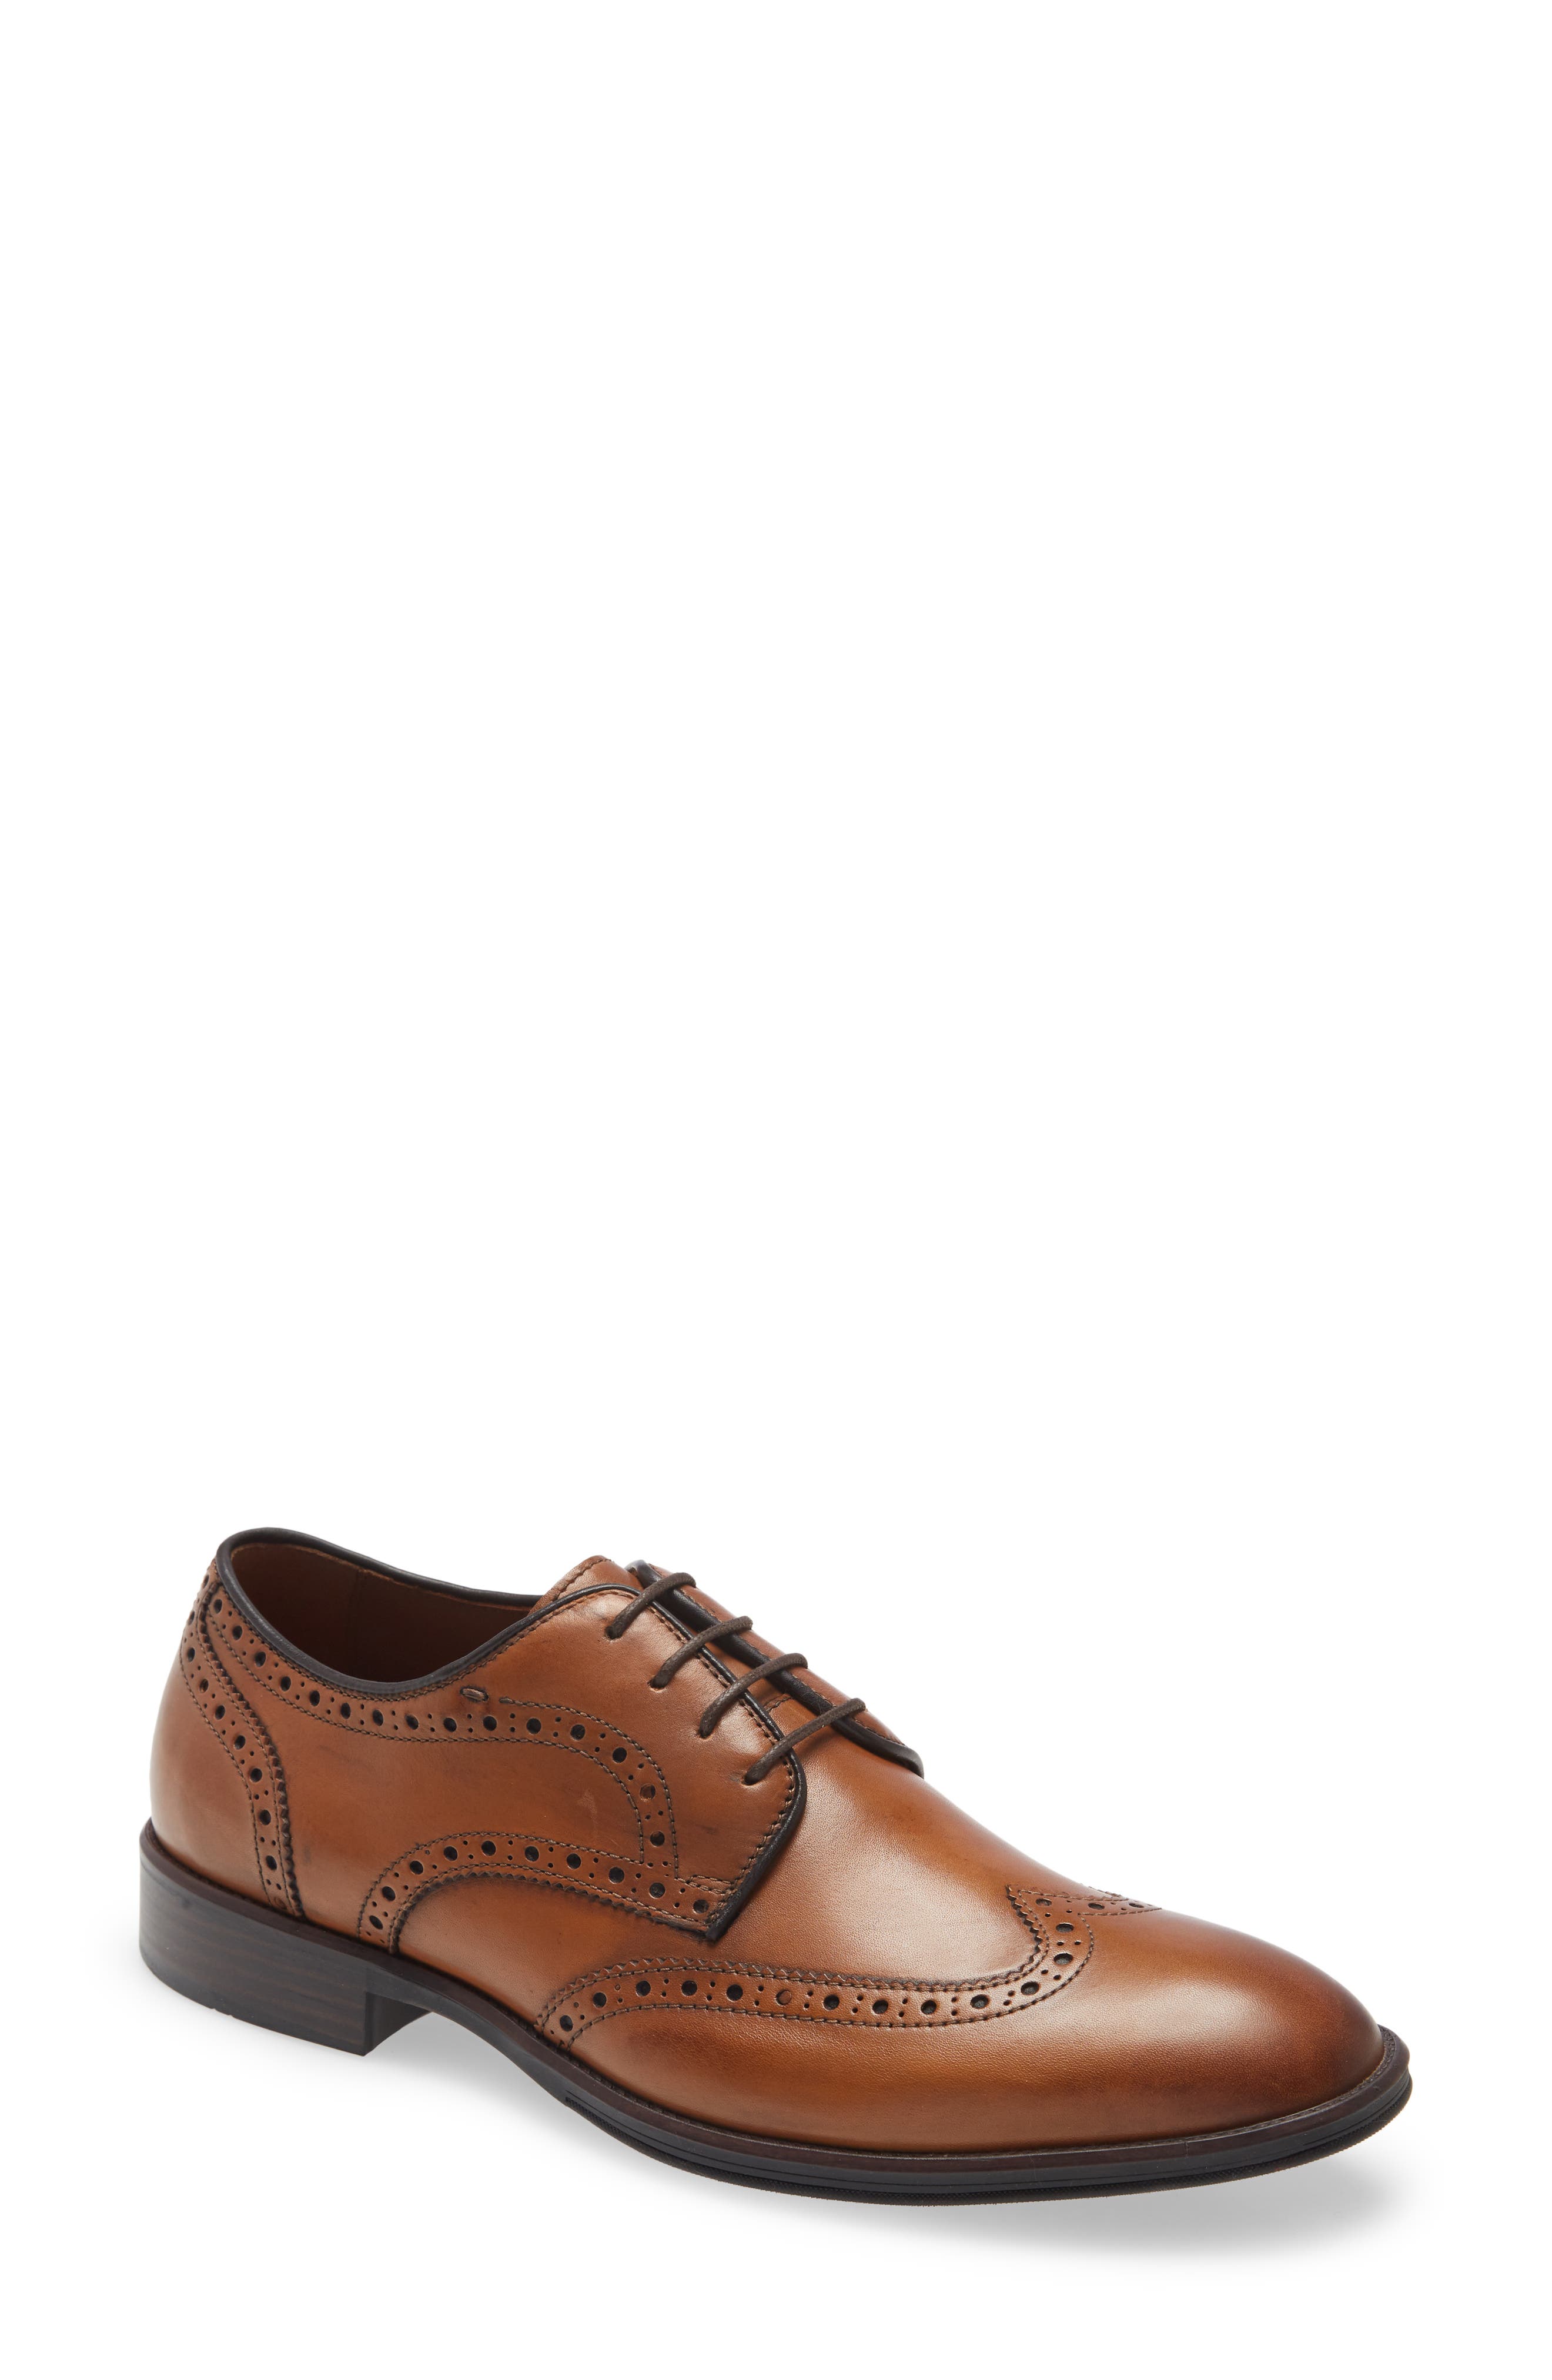 Schoenen Herenschoenen Oxfords & Wingtips Sz 11 Johnston And Murphy Wingtip Dress Shoes /Genuine Leather Oxford 